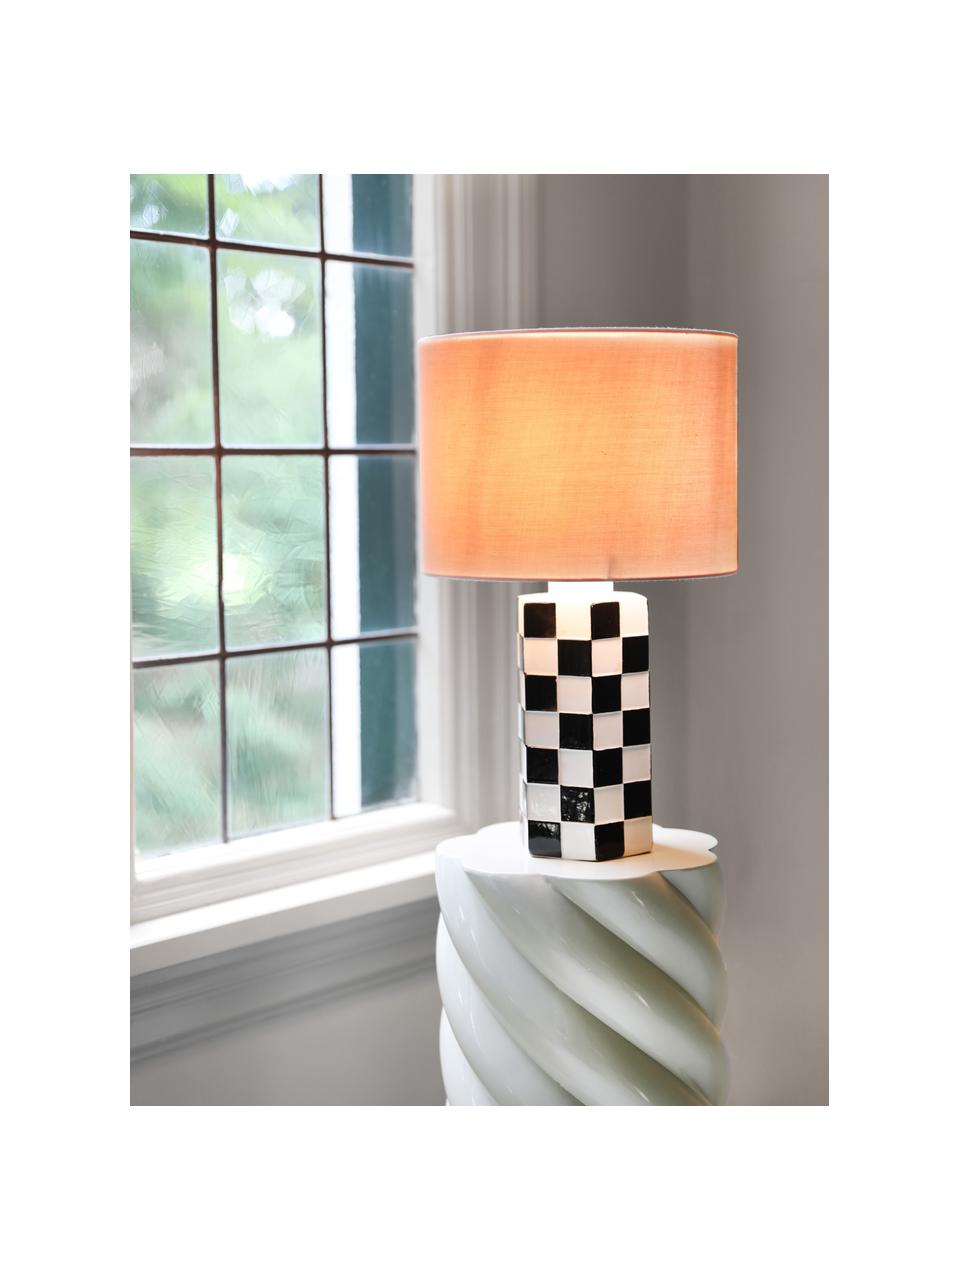 Lampe à poser motif à damier Check, Rose pastel, blanc, noir, Ø 25 x haut. 42 cm